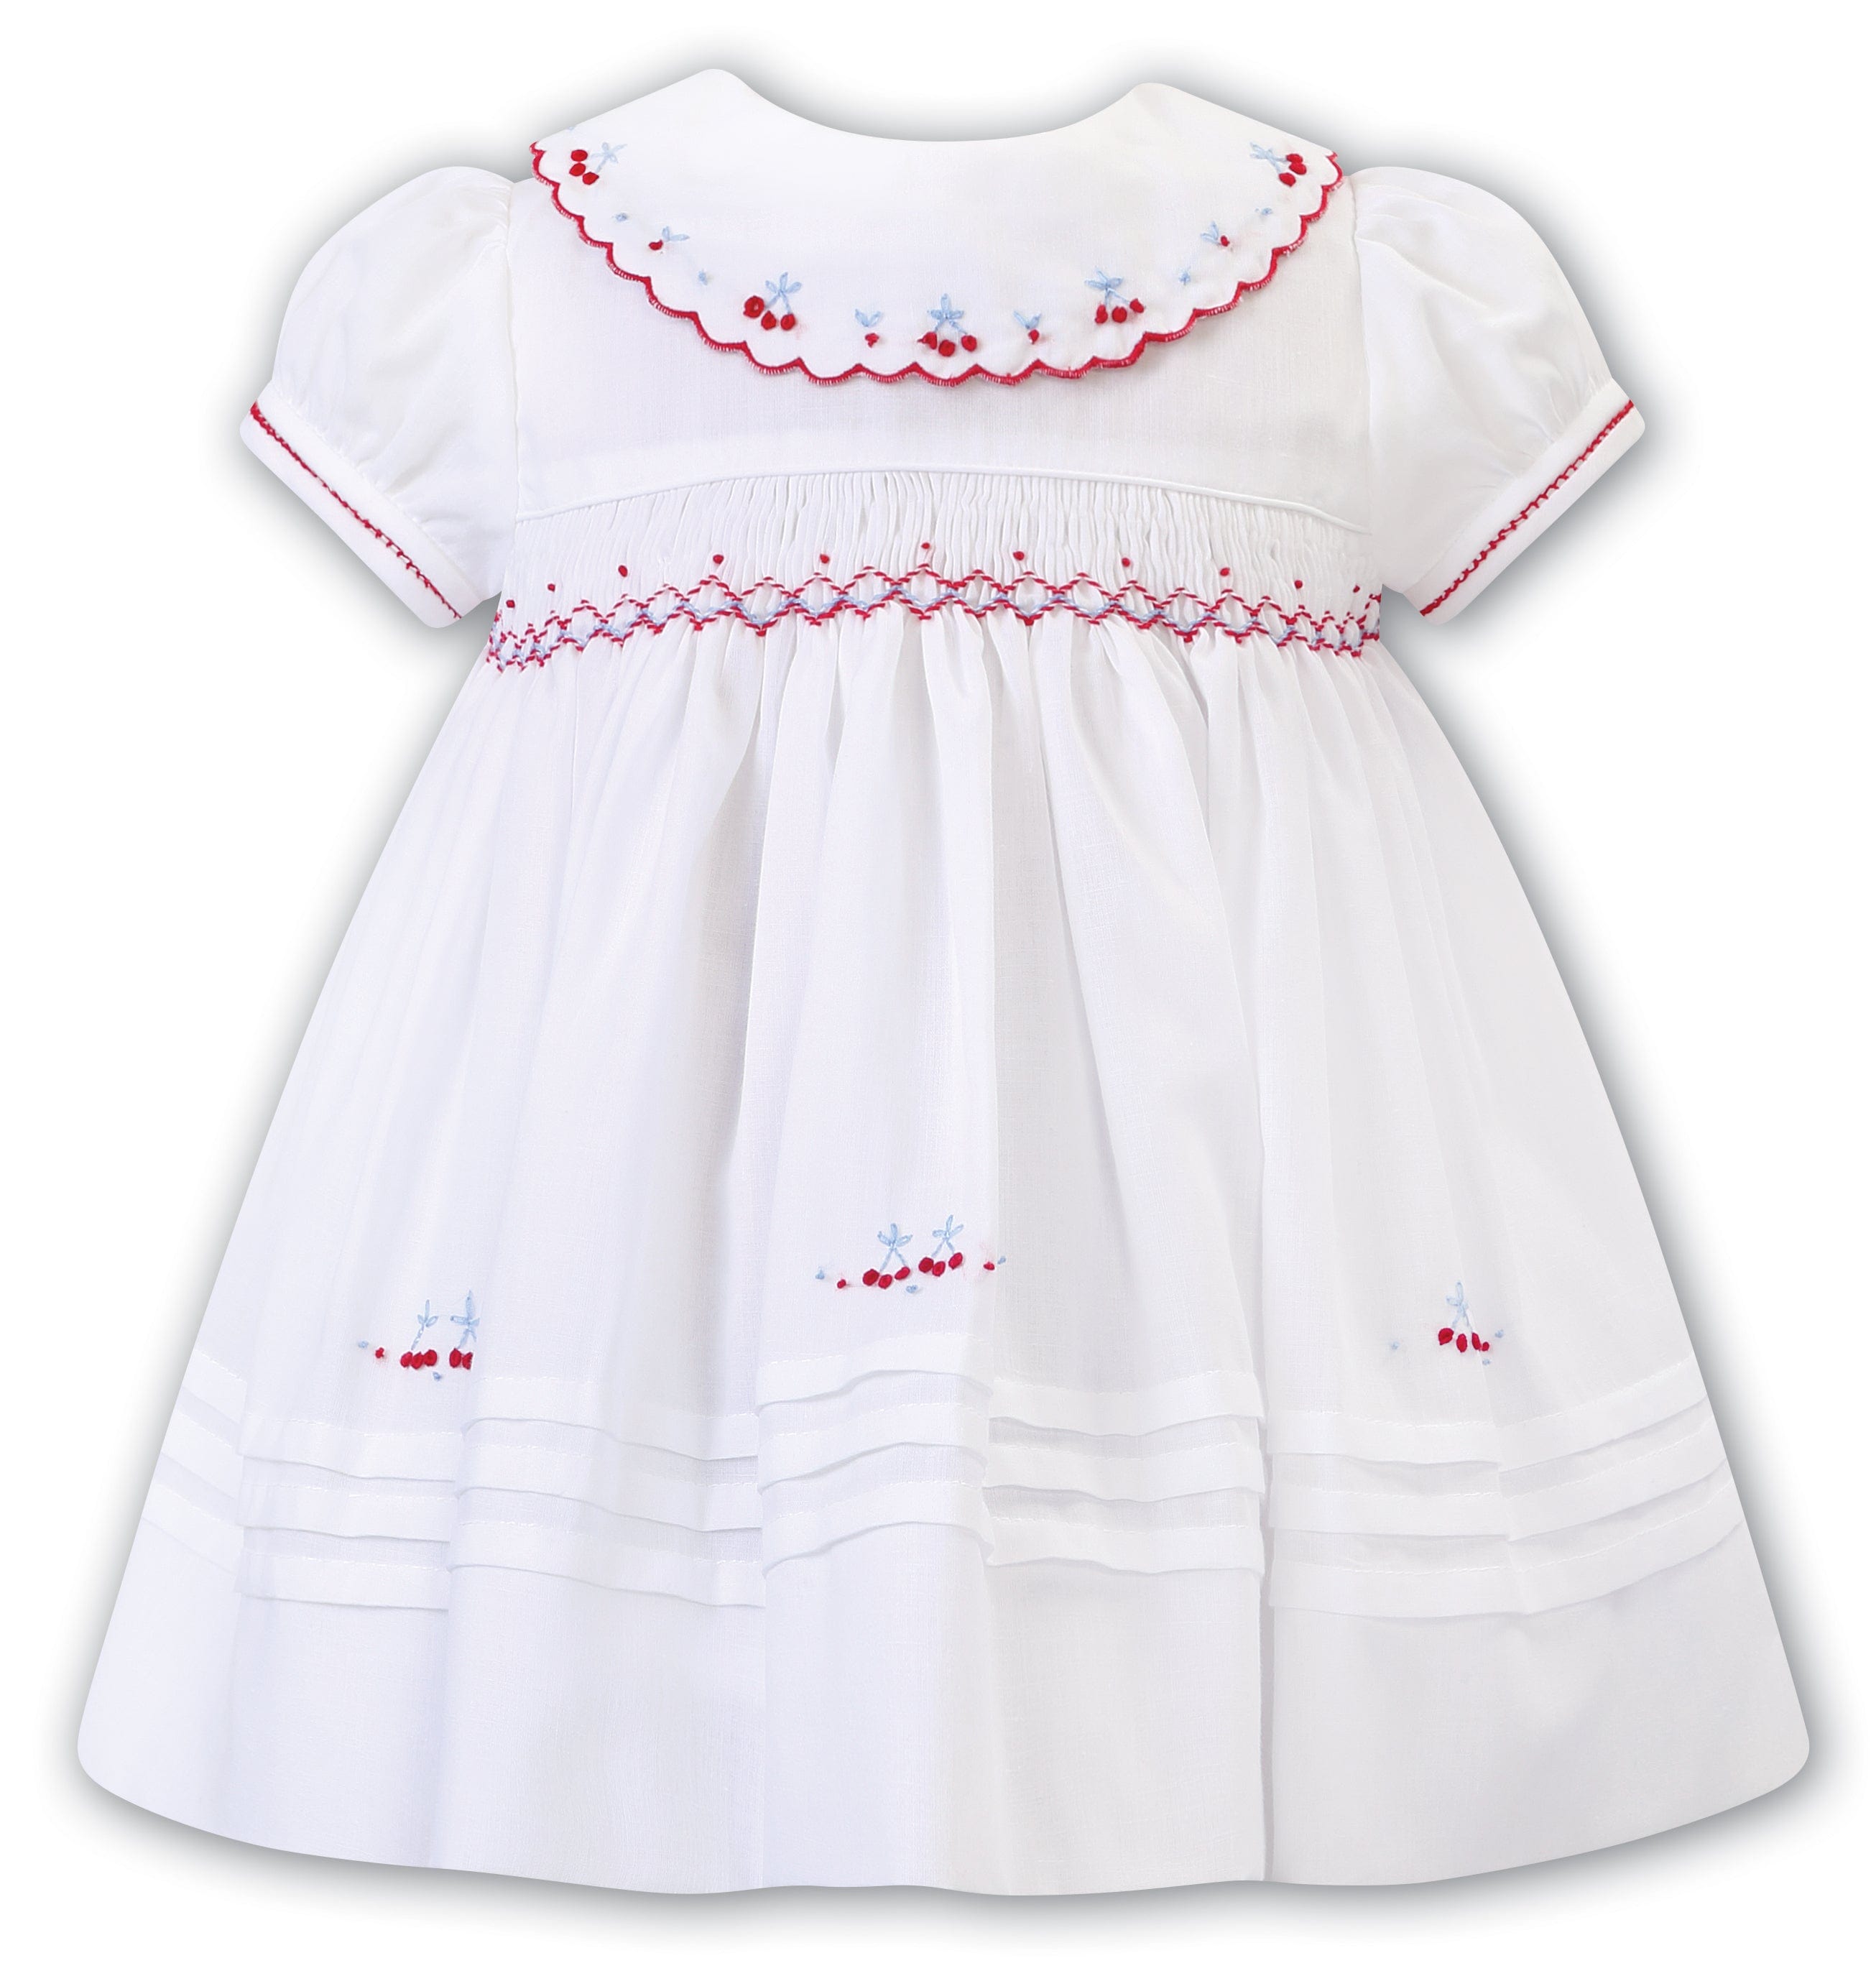 SARAH LOUISE -  Smocked Bib Collar With Cherry Detail Dress - White